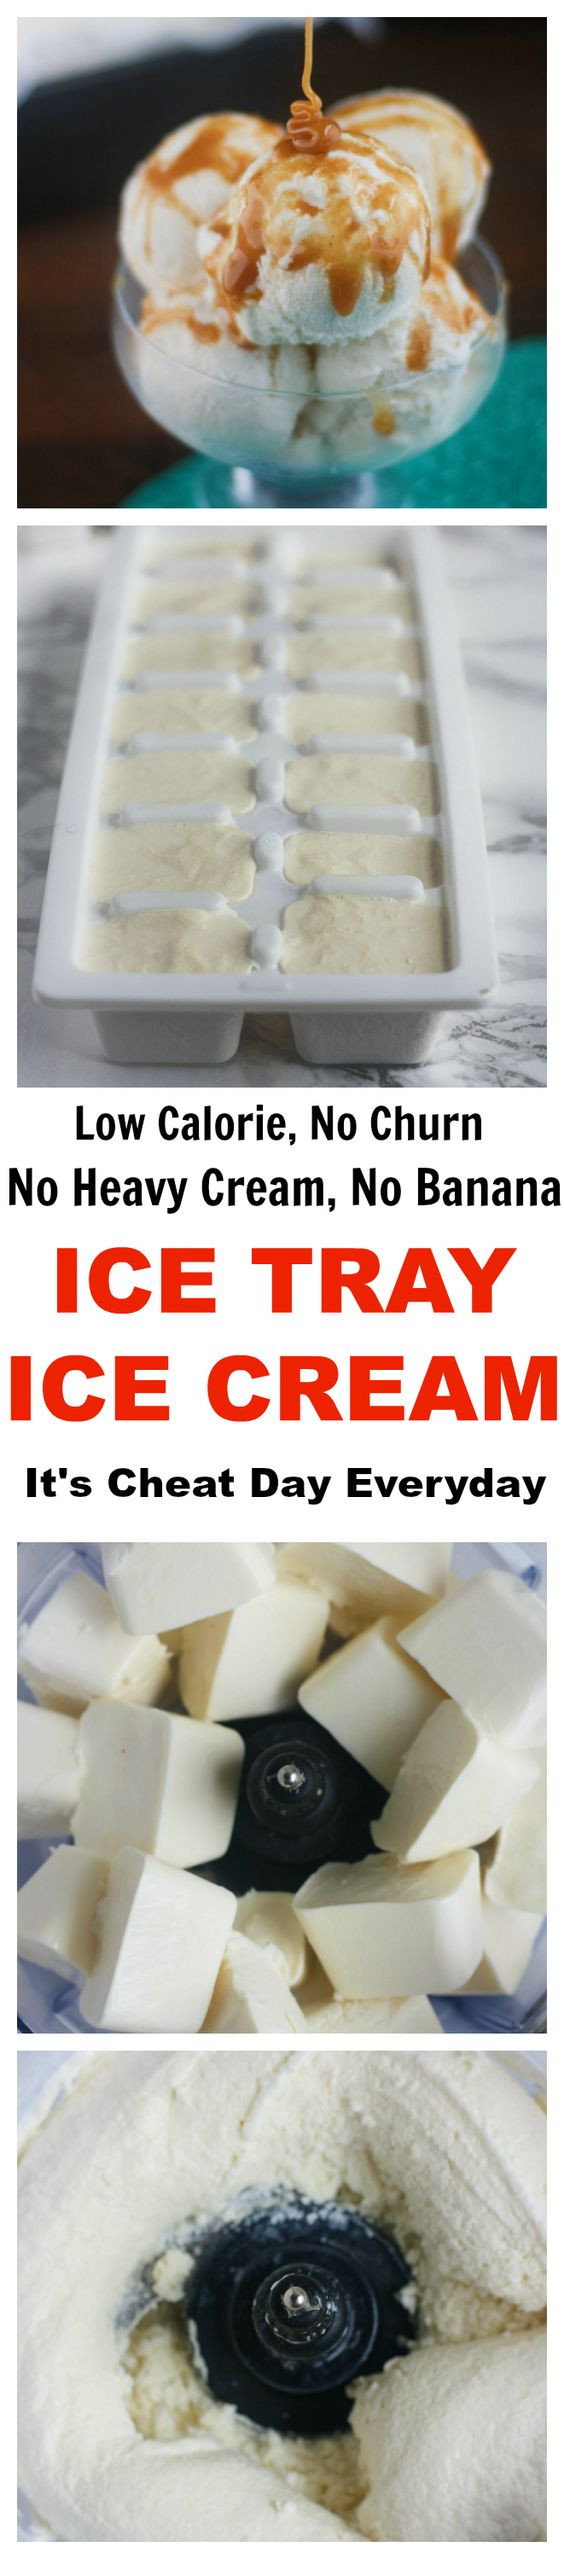 Low Calorie Ice Cream Recipes For Ice Cream Maker
 No churn ice cream Churn ice cream and Ice cream recipes